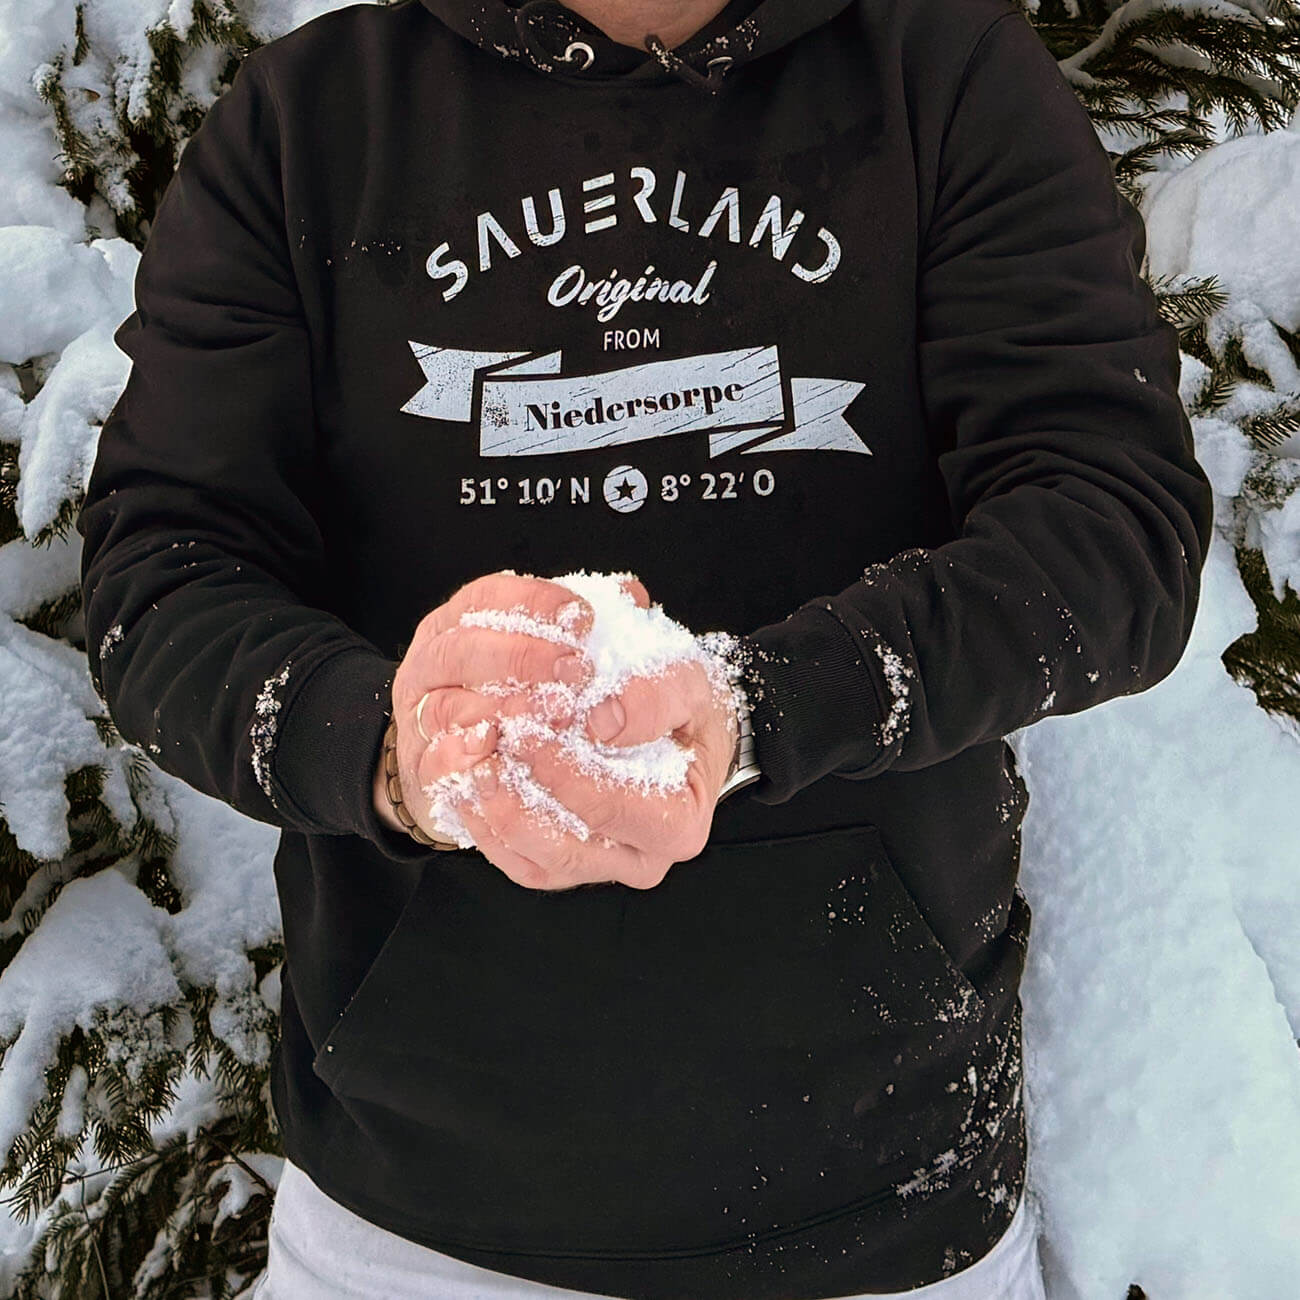 Mann im Schnee mit schwarzem Sauerland Hoodie mit hellgrauem Aufdruck Sauerland Original from Niedersorpe.